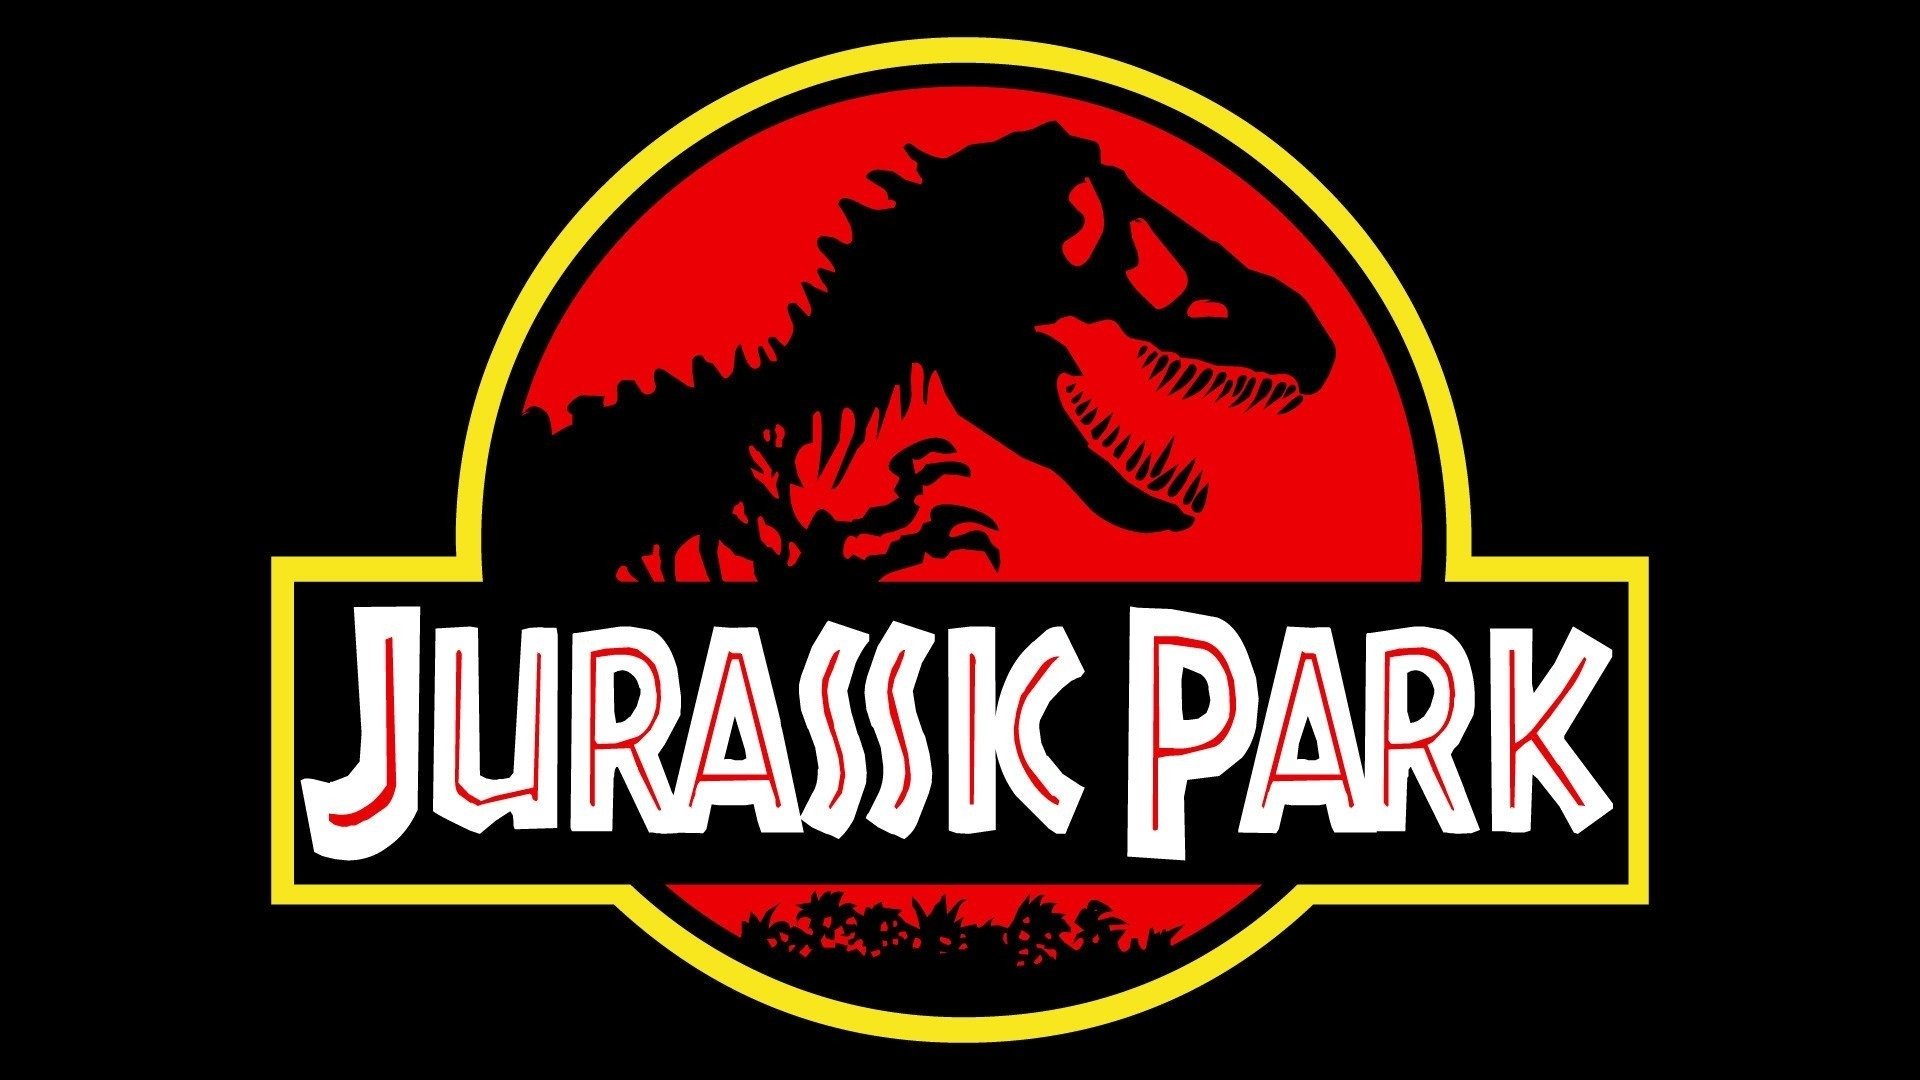 Jurassic Park Survival pourrait vous choquer autant que ce jeu culte